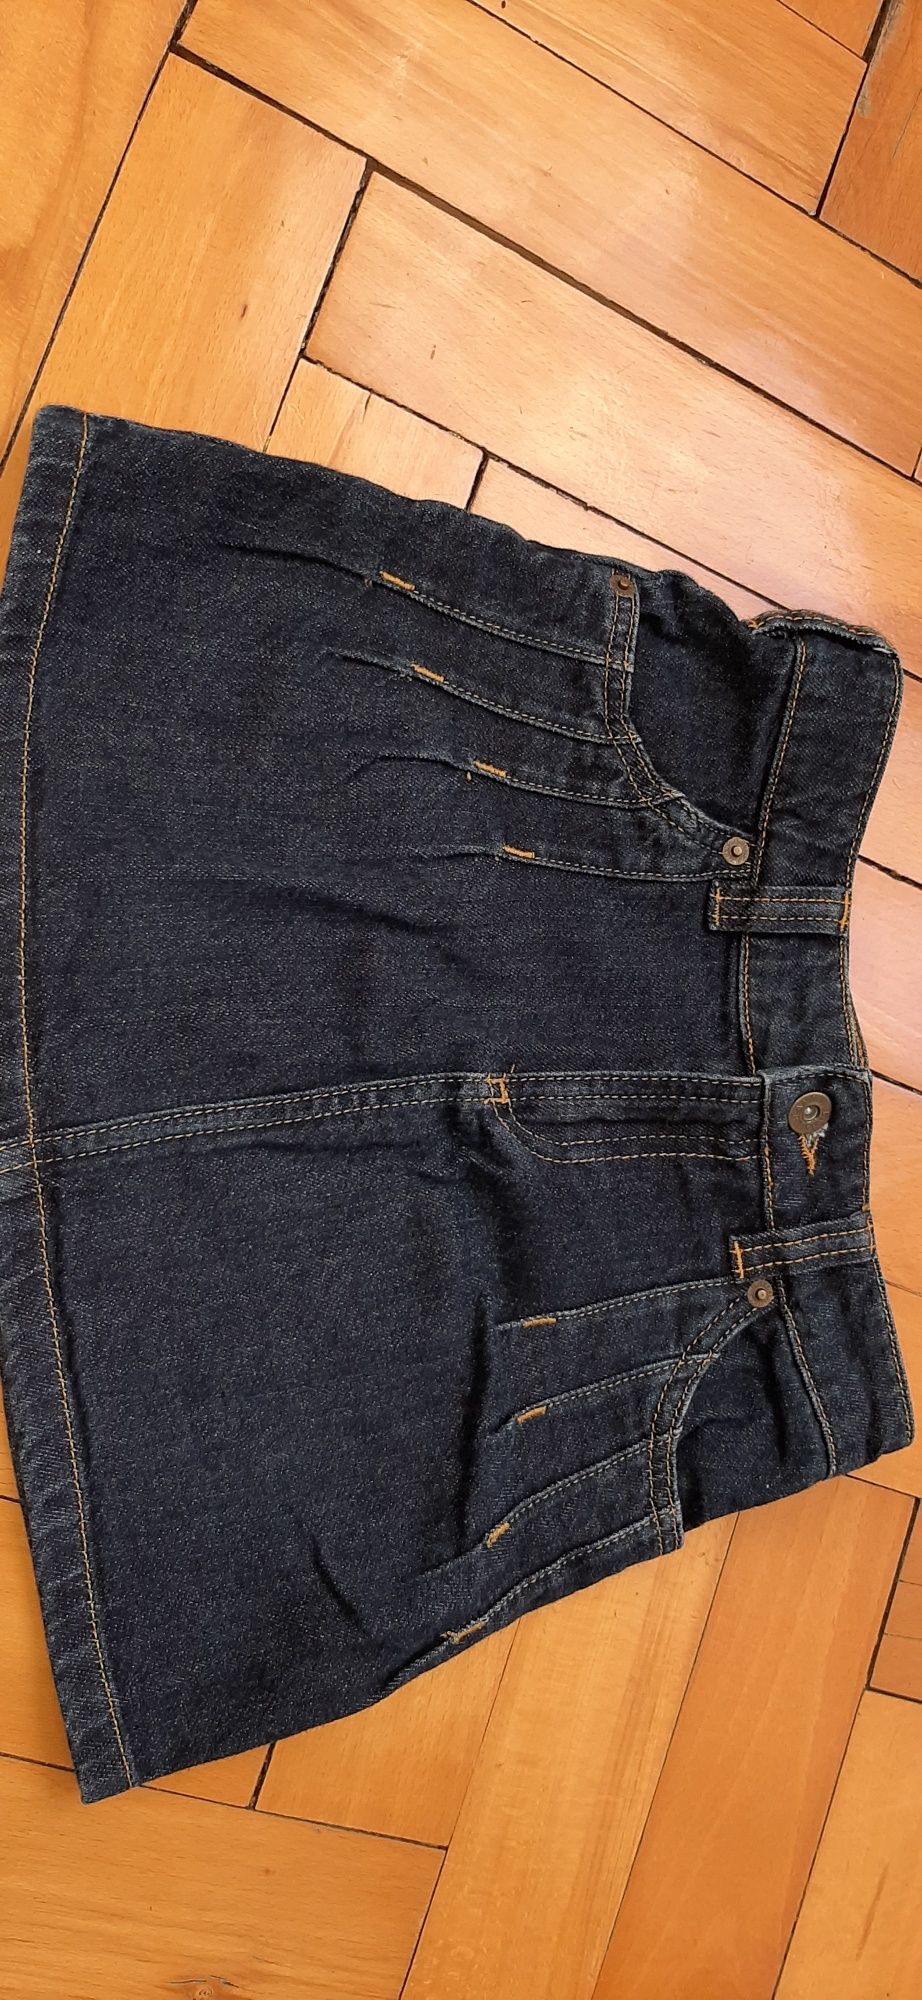 Spódniczka mini jeans nz oj 8-9 lat